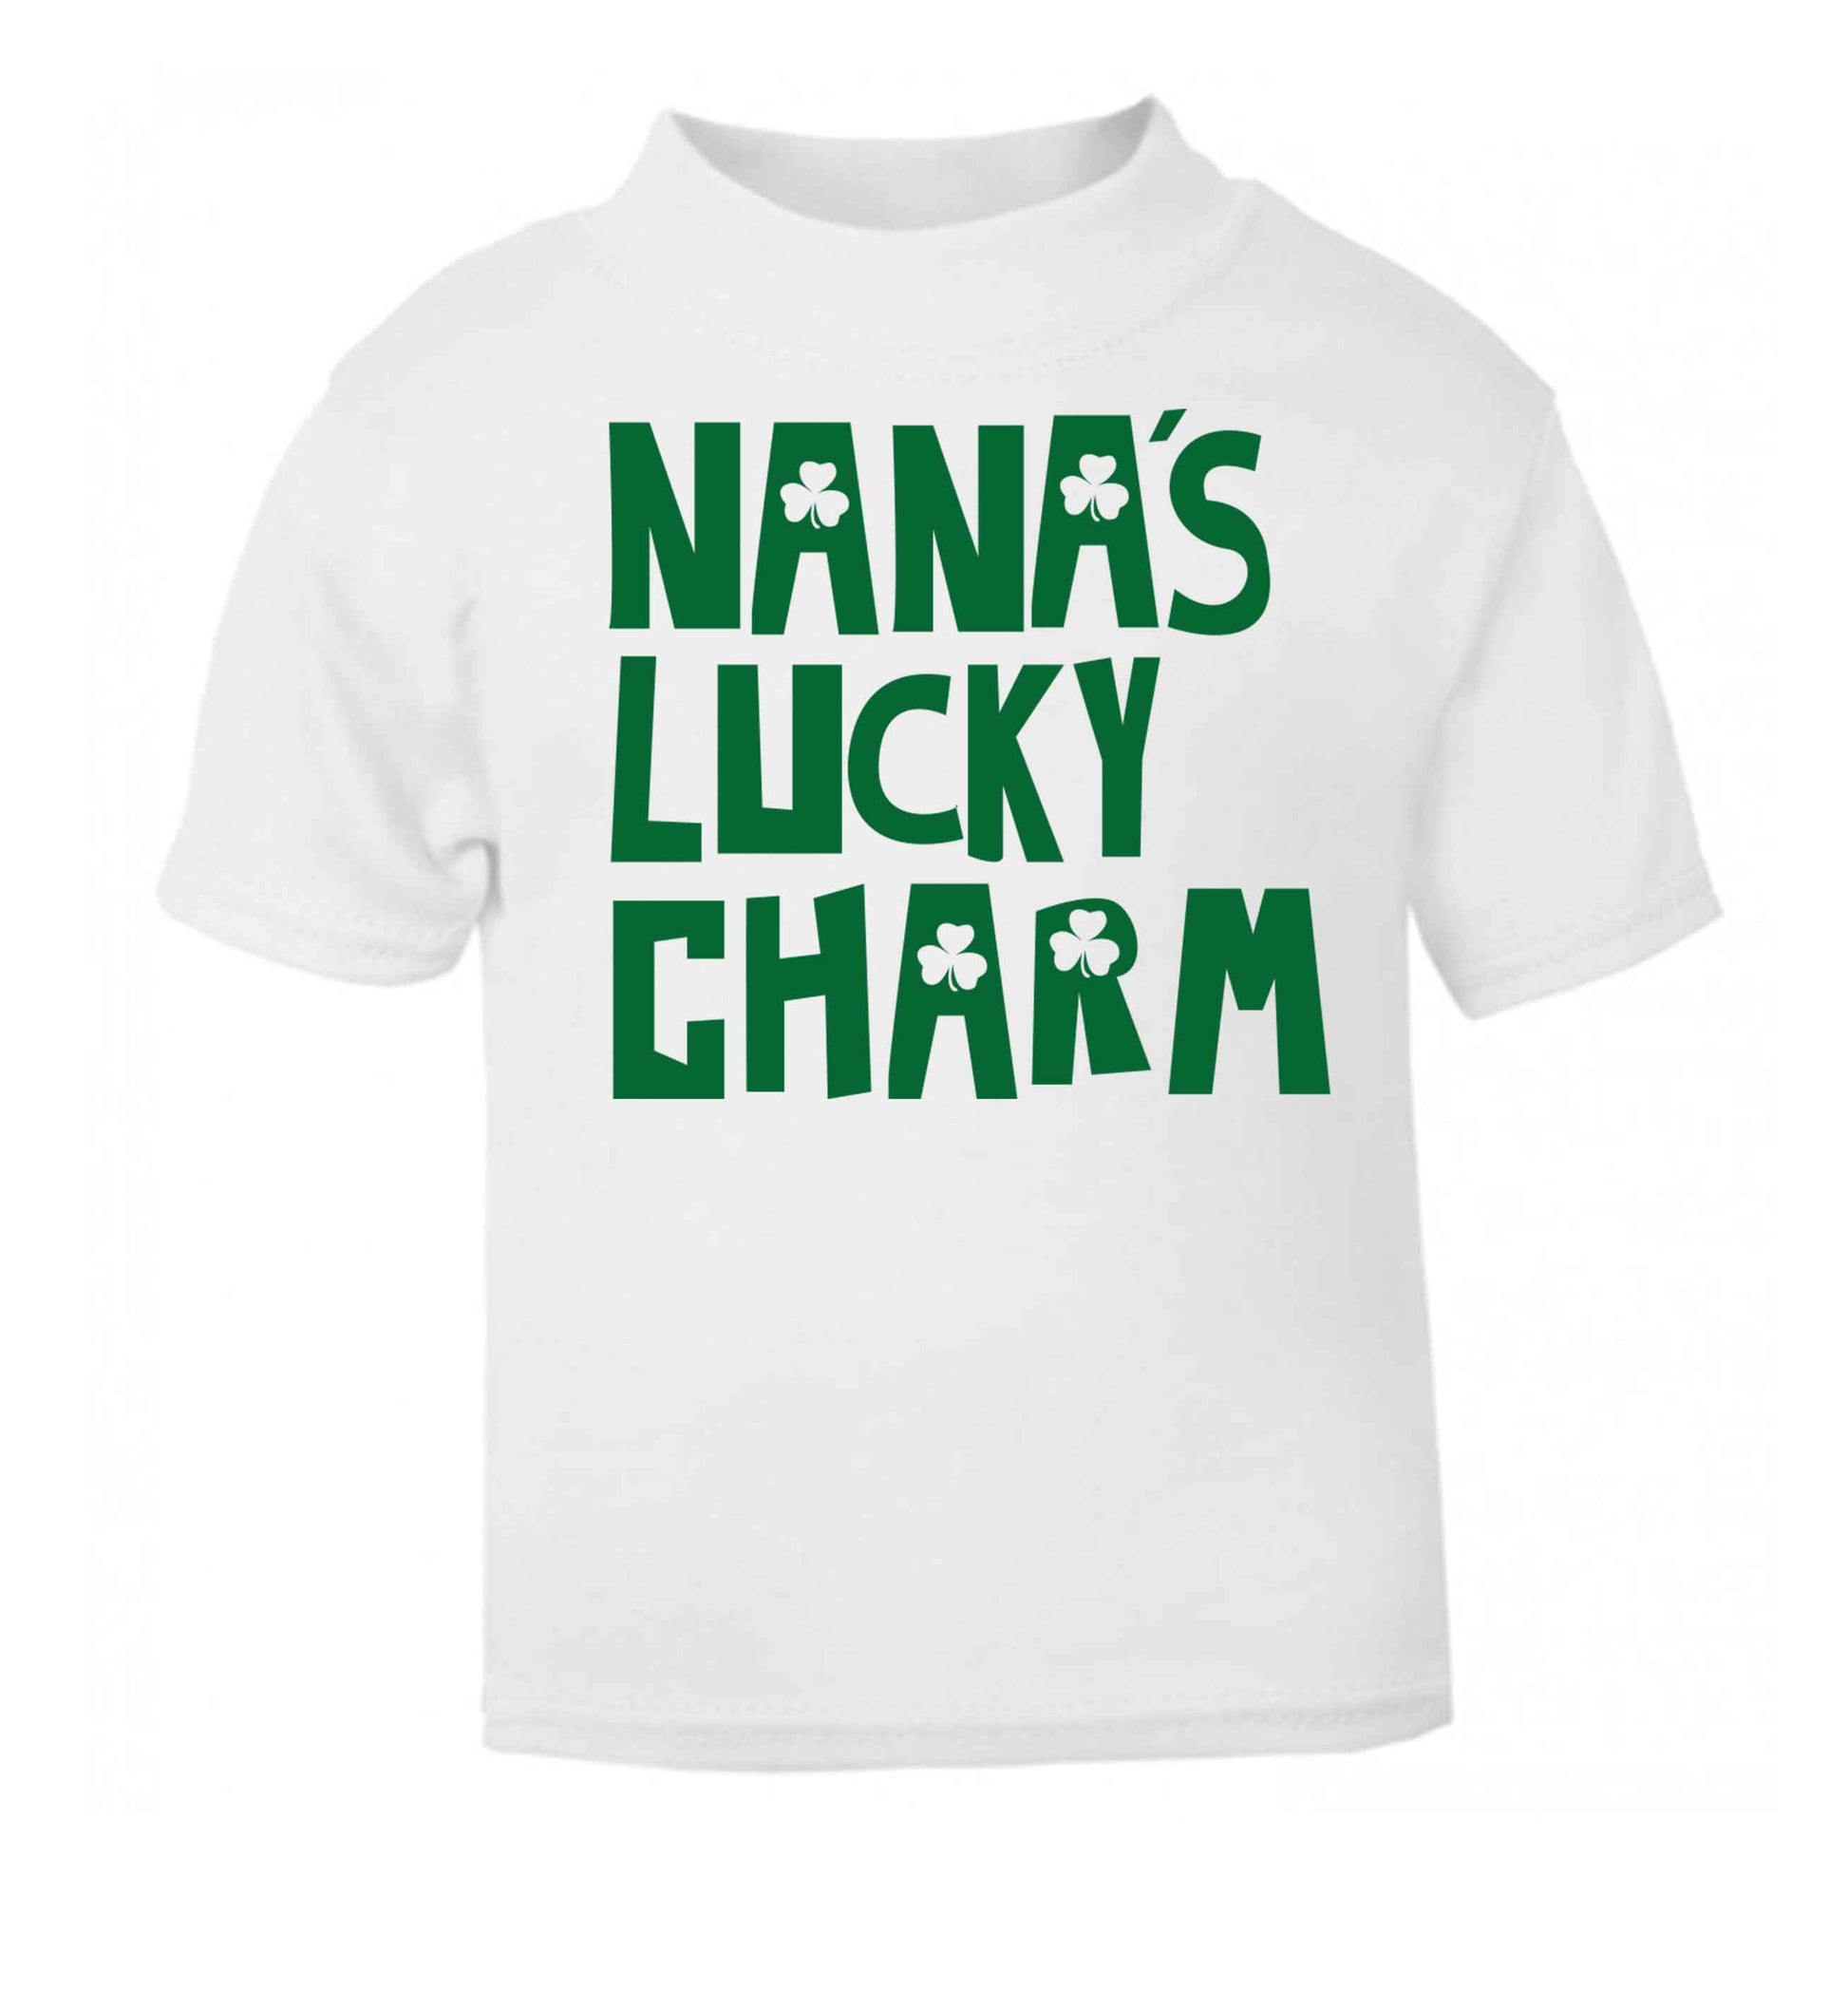 Nana's lucky charm white baby toddler Tshirt 2 Years